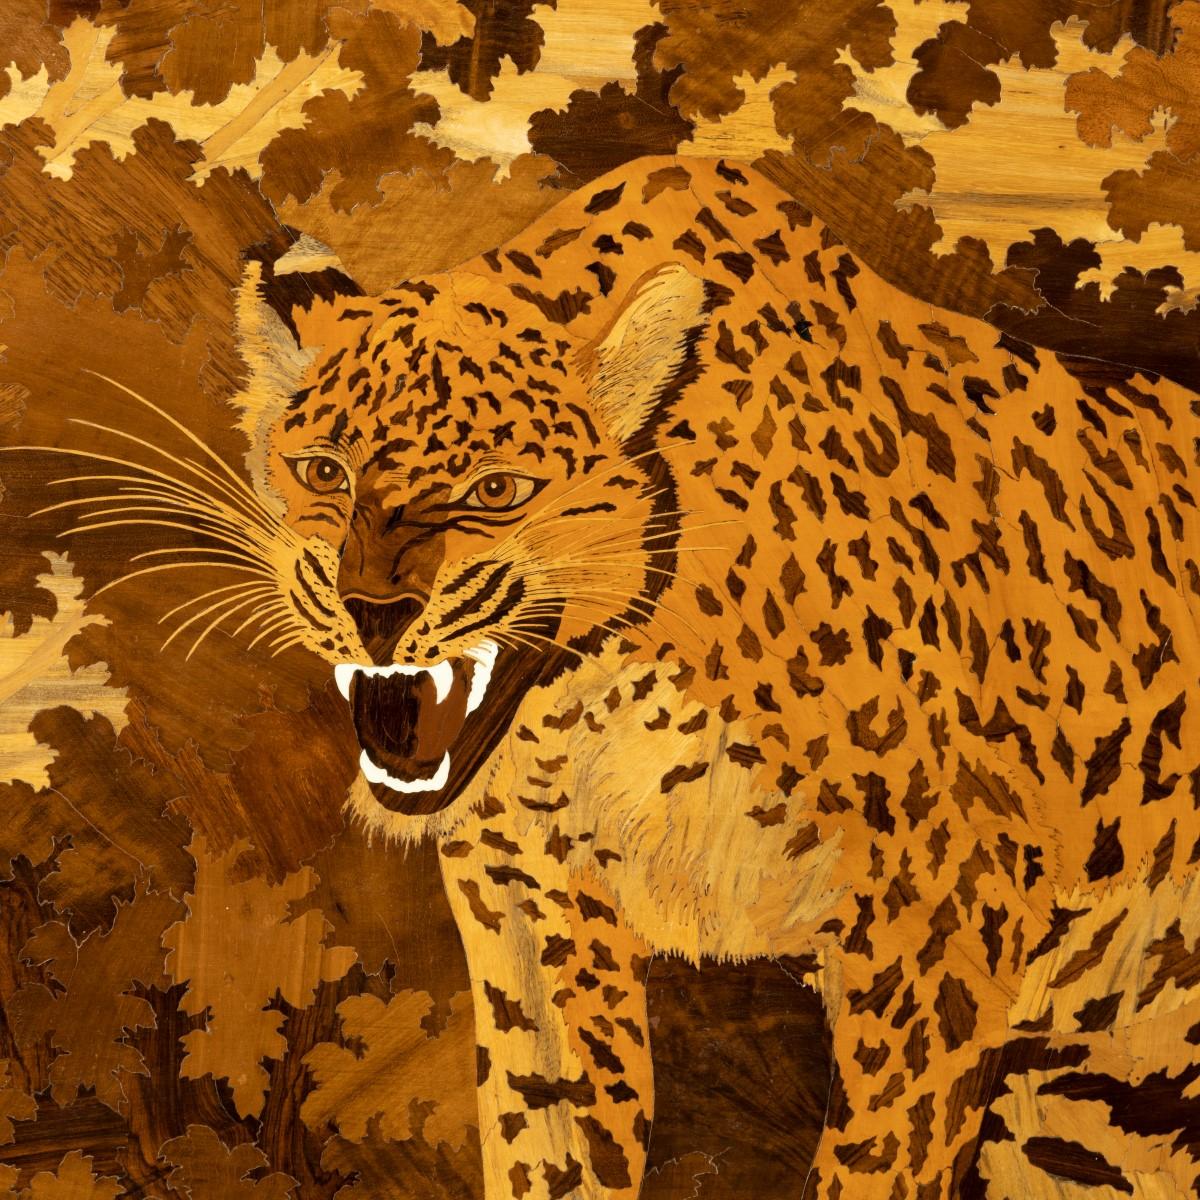 Panneau de marqueterie Art déco représentant un jaguar, de forme rectangulaire représentant un jaguar hargneux émergeant d'un bois, travaillé dans des bois exotiques dont le noyer, le bois de roi, le bois de satin et l'ivoire sur un fond de buis, le